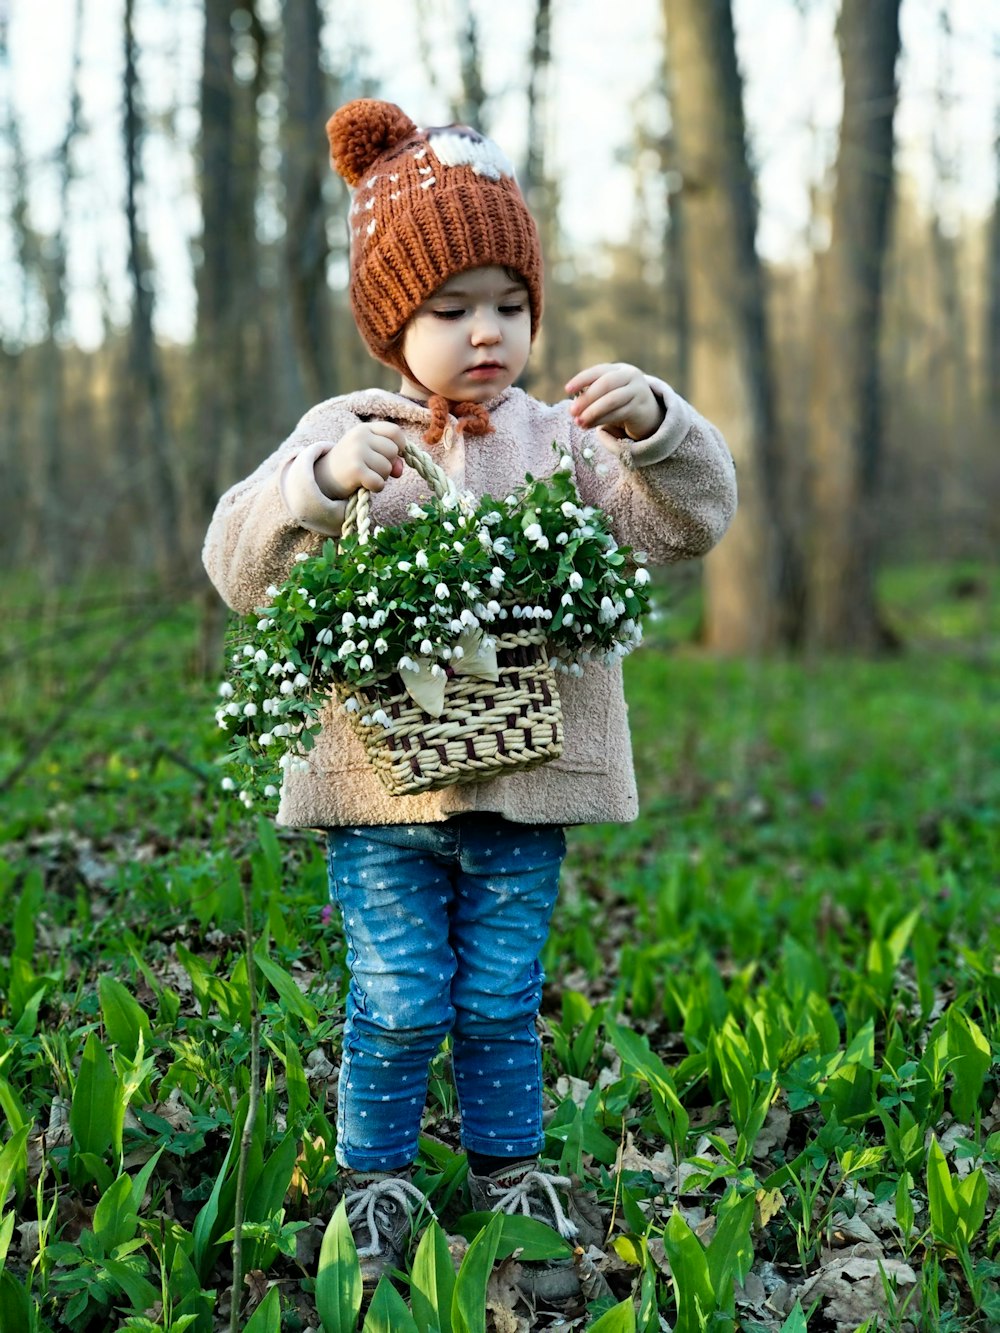 숲에서 꽃으로 가득 찬 바구니를 들고 있는 유아 소녀